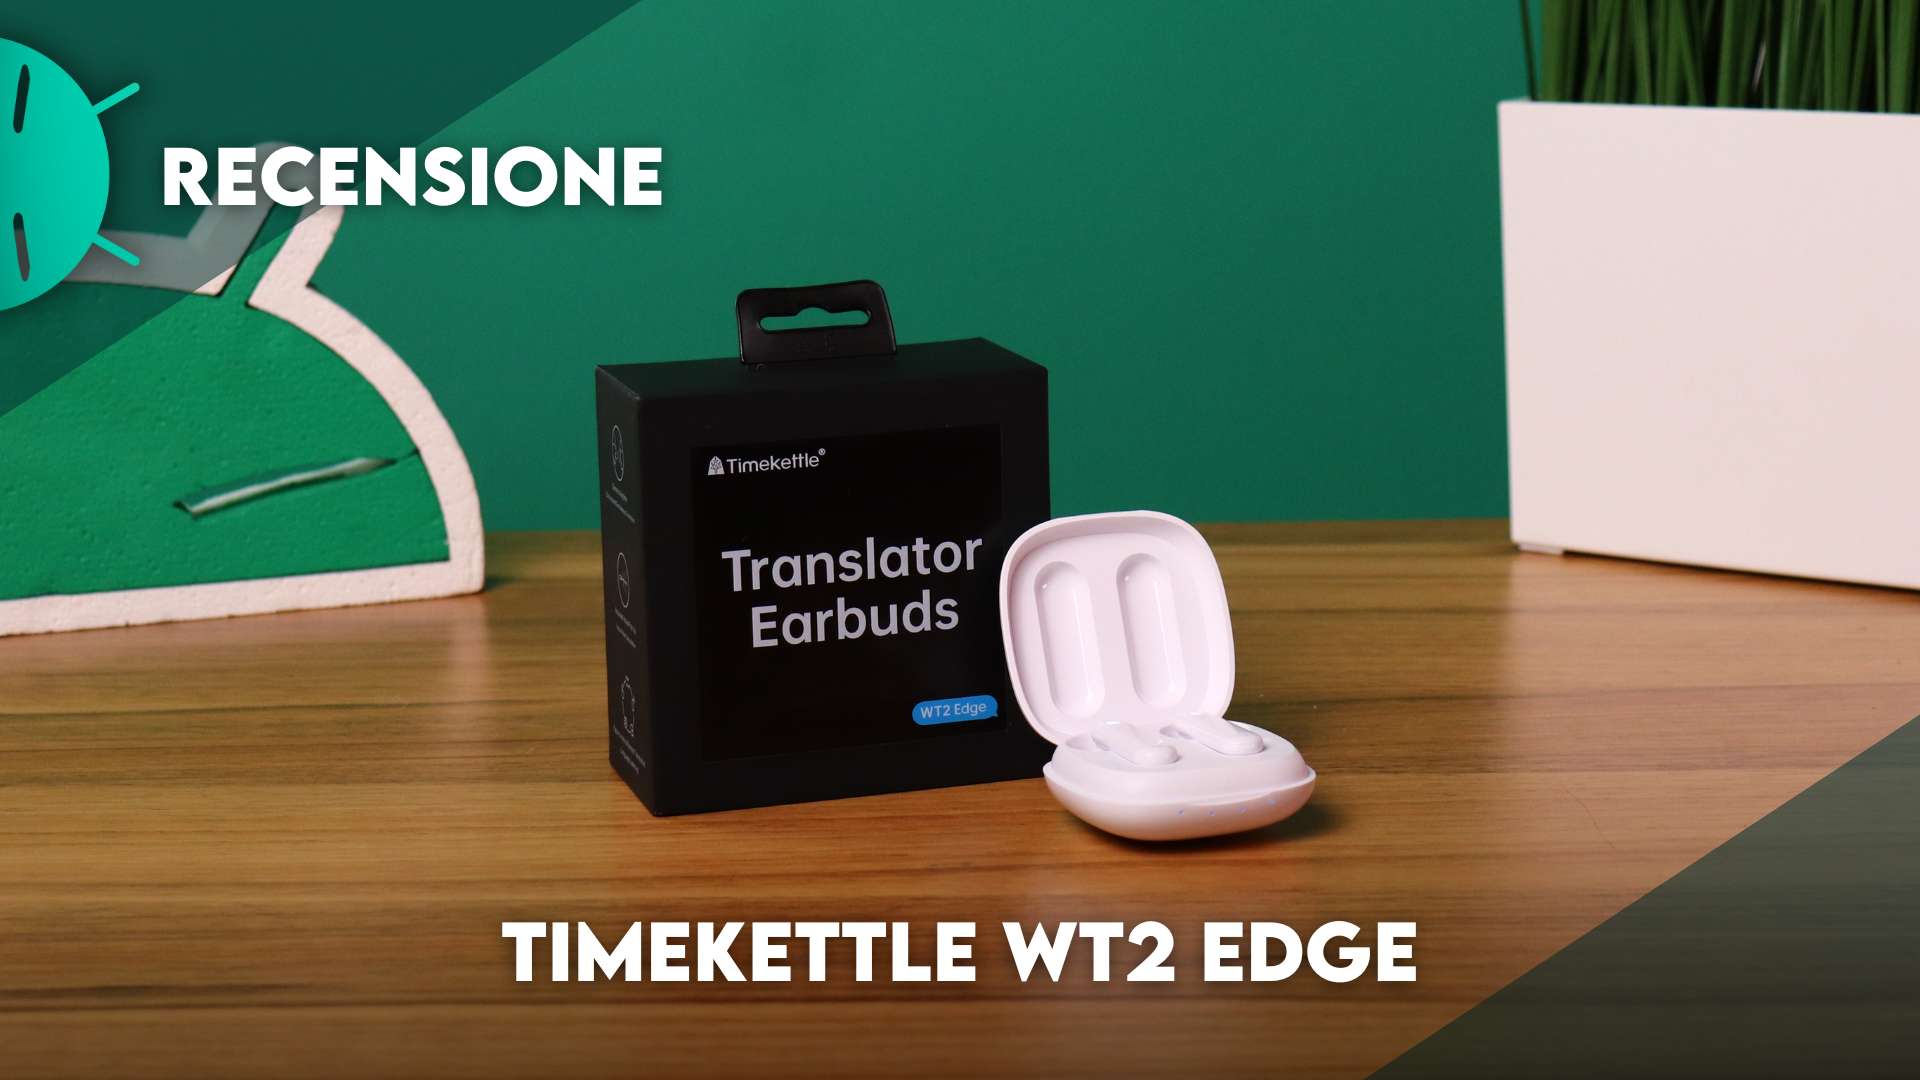 Timekettle WT2 Edge los auriculares que traducen mas de 40 idiomas  translator earbuds 